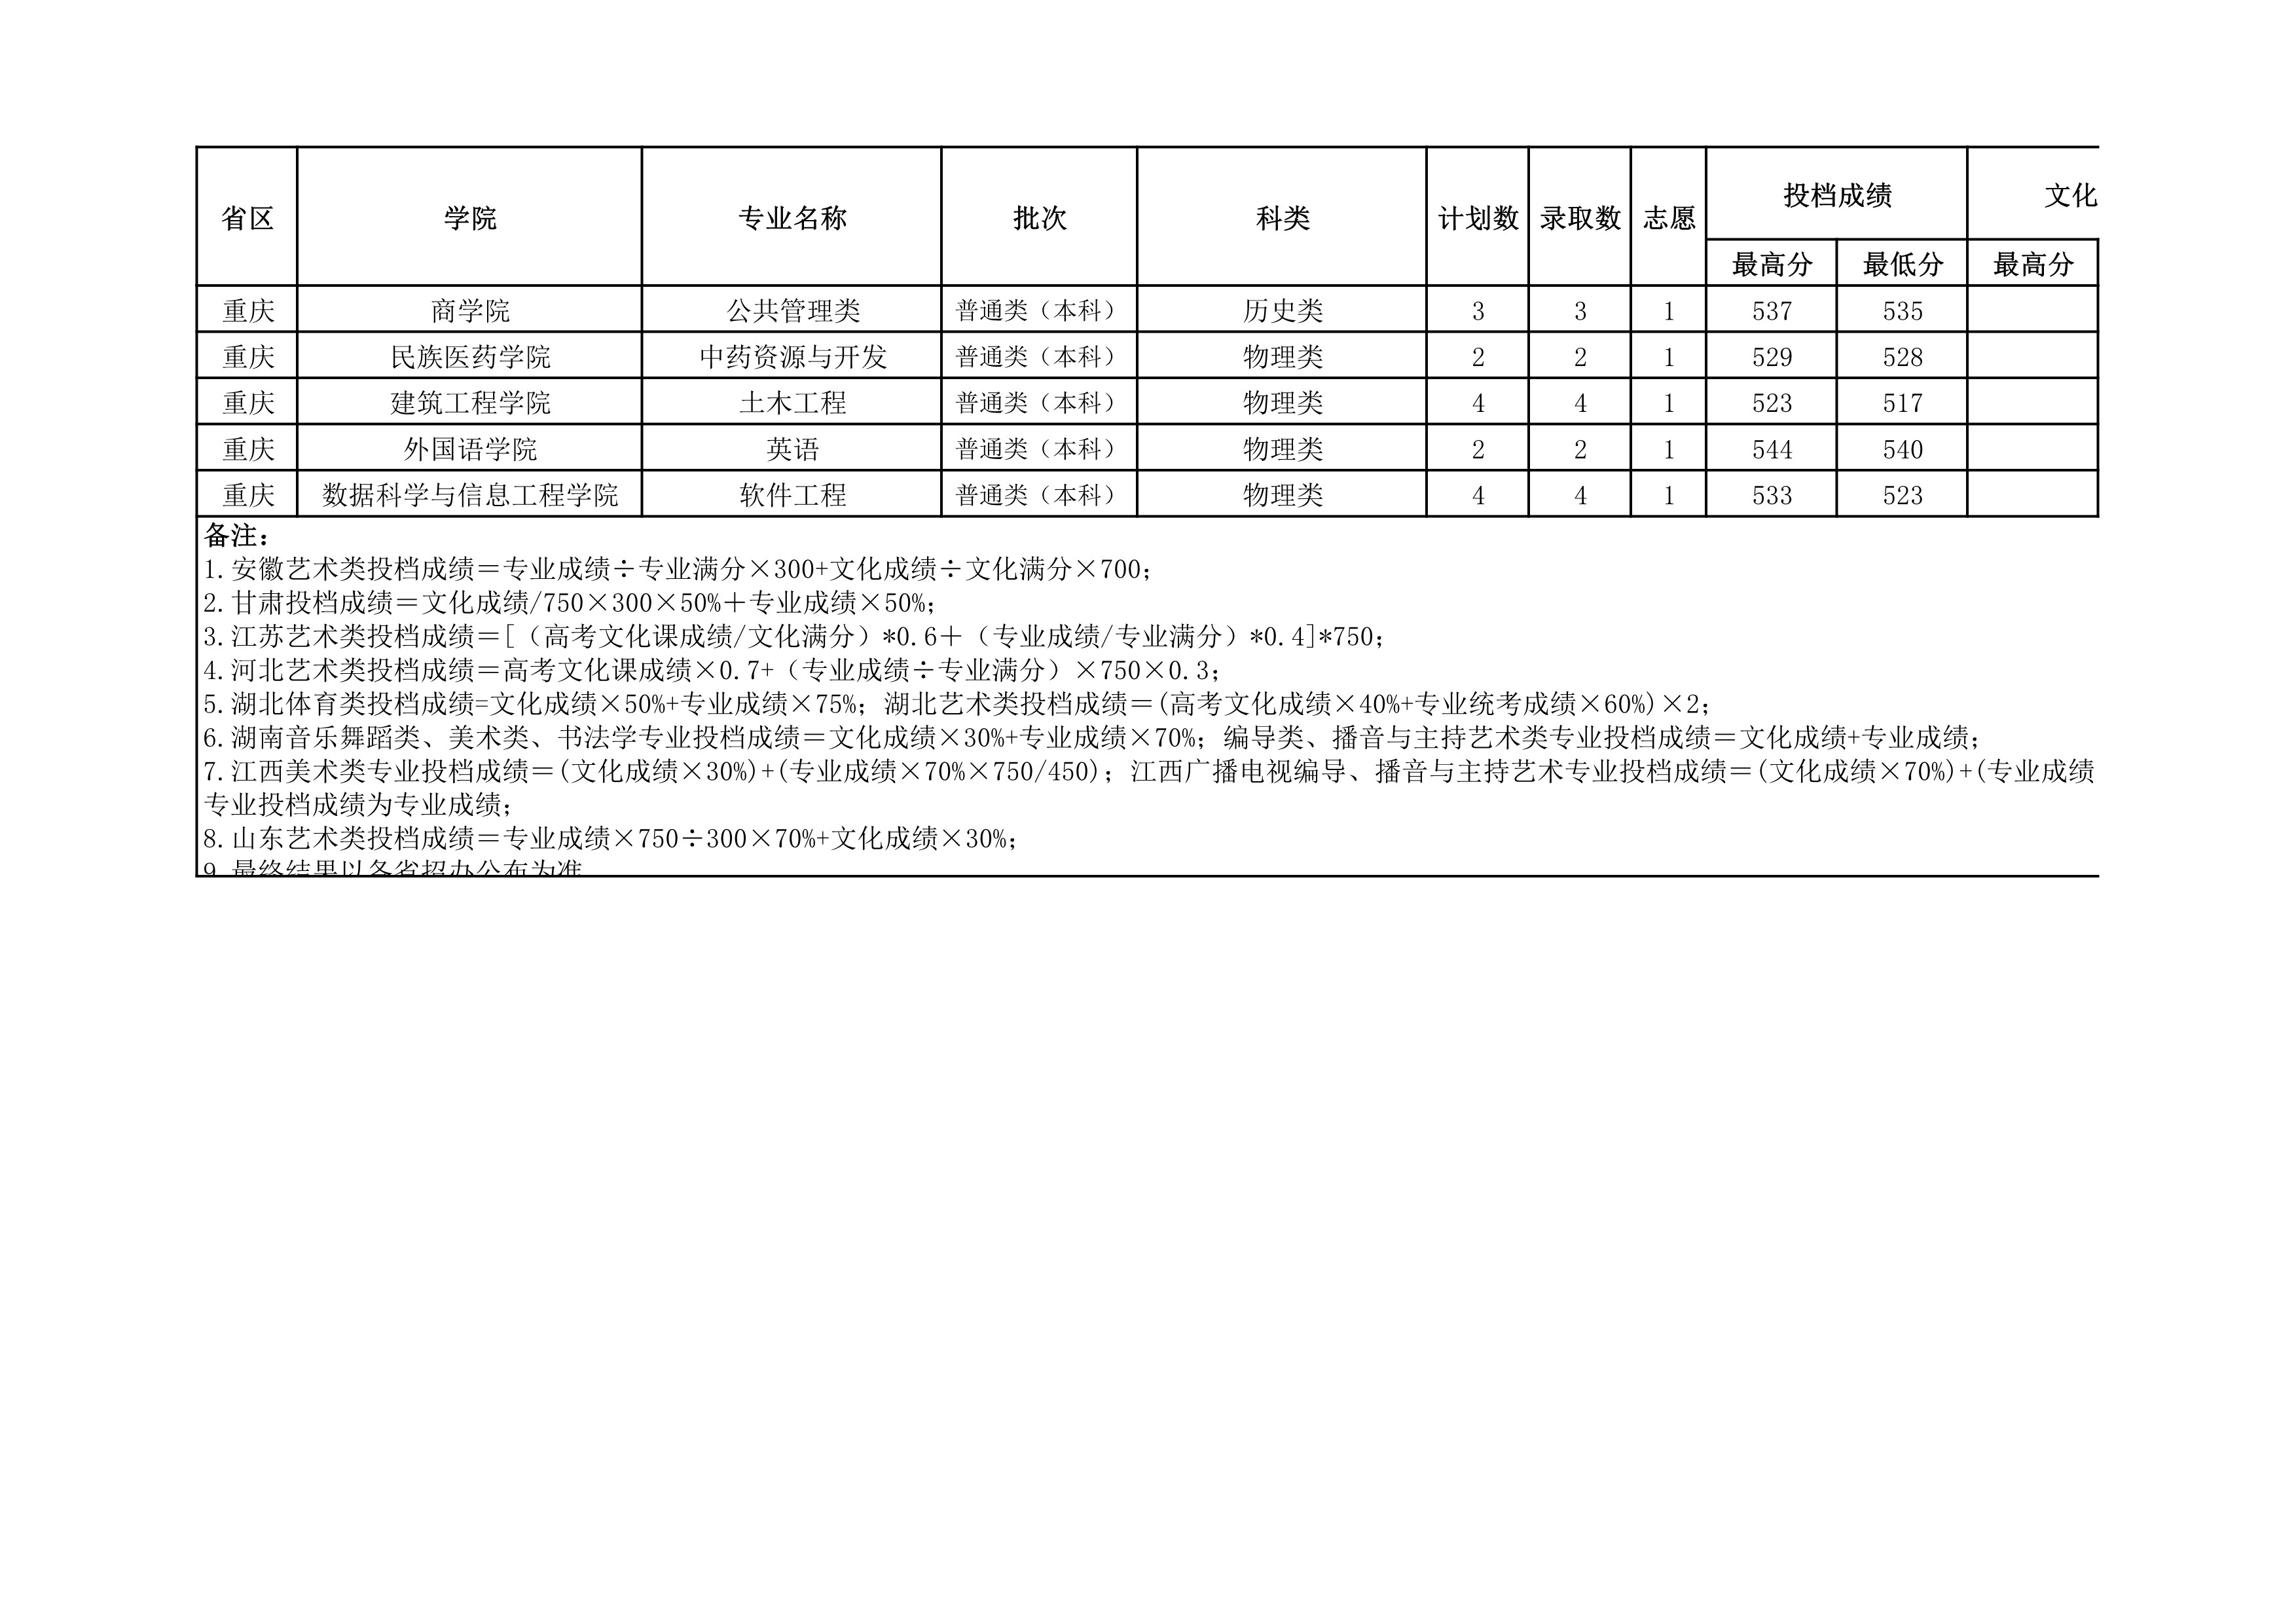 贵州民族大学2021年省外录取分数情况统计表_20220414154148_6.jpg